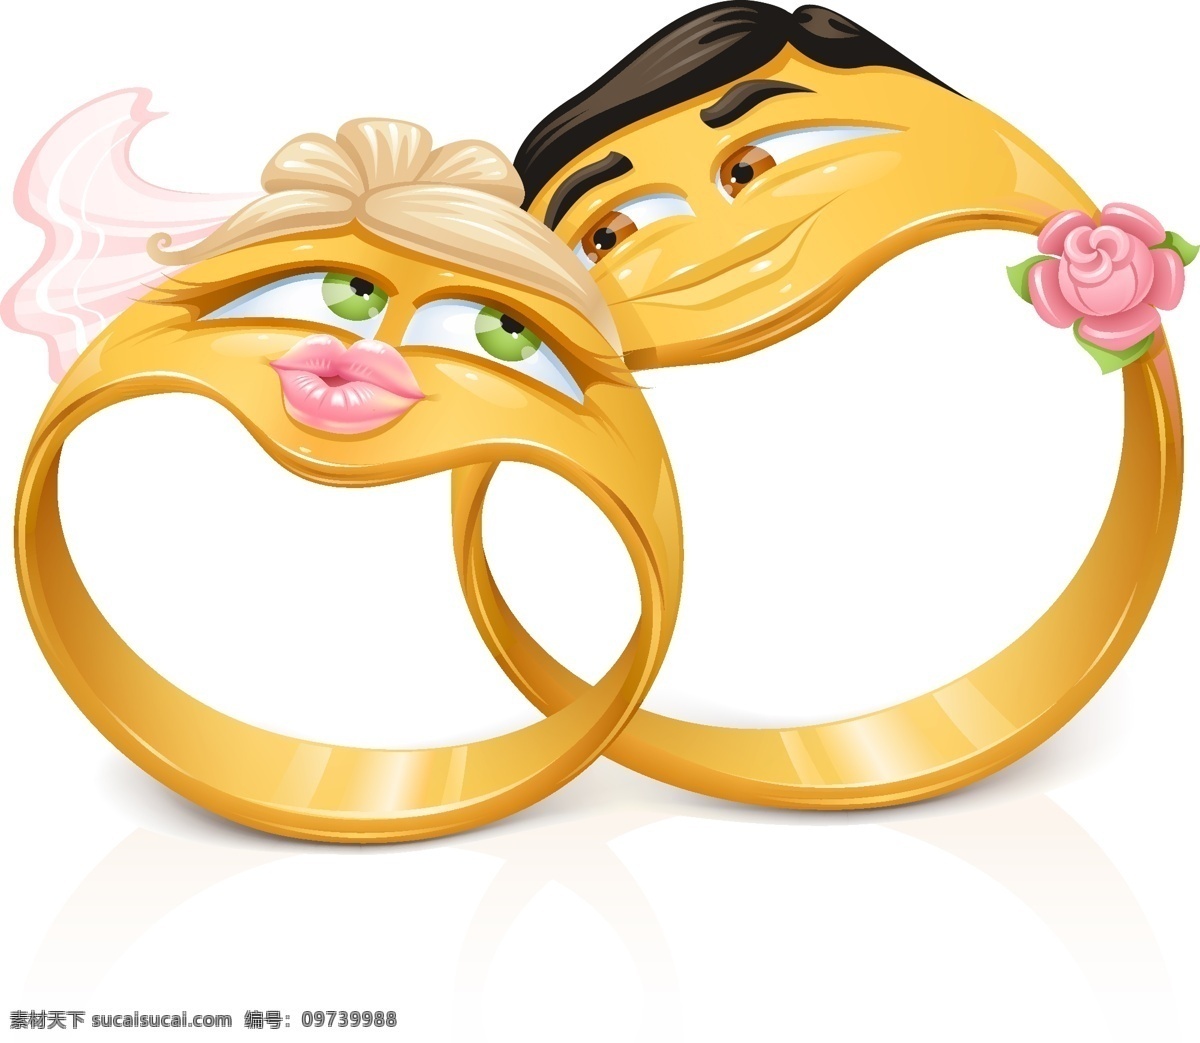 卡通 风格 戒指 矢量 结婚戒指 可爱 情侣戒指 矢量图 矢量人物